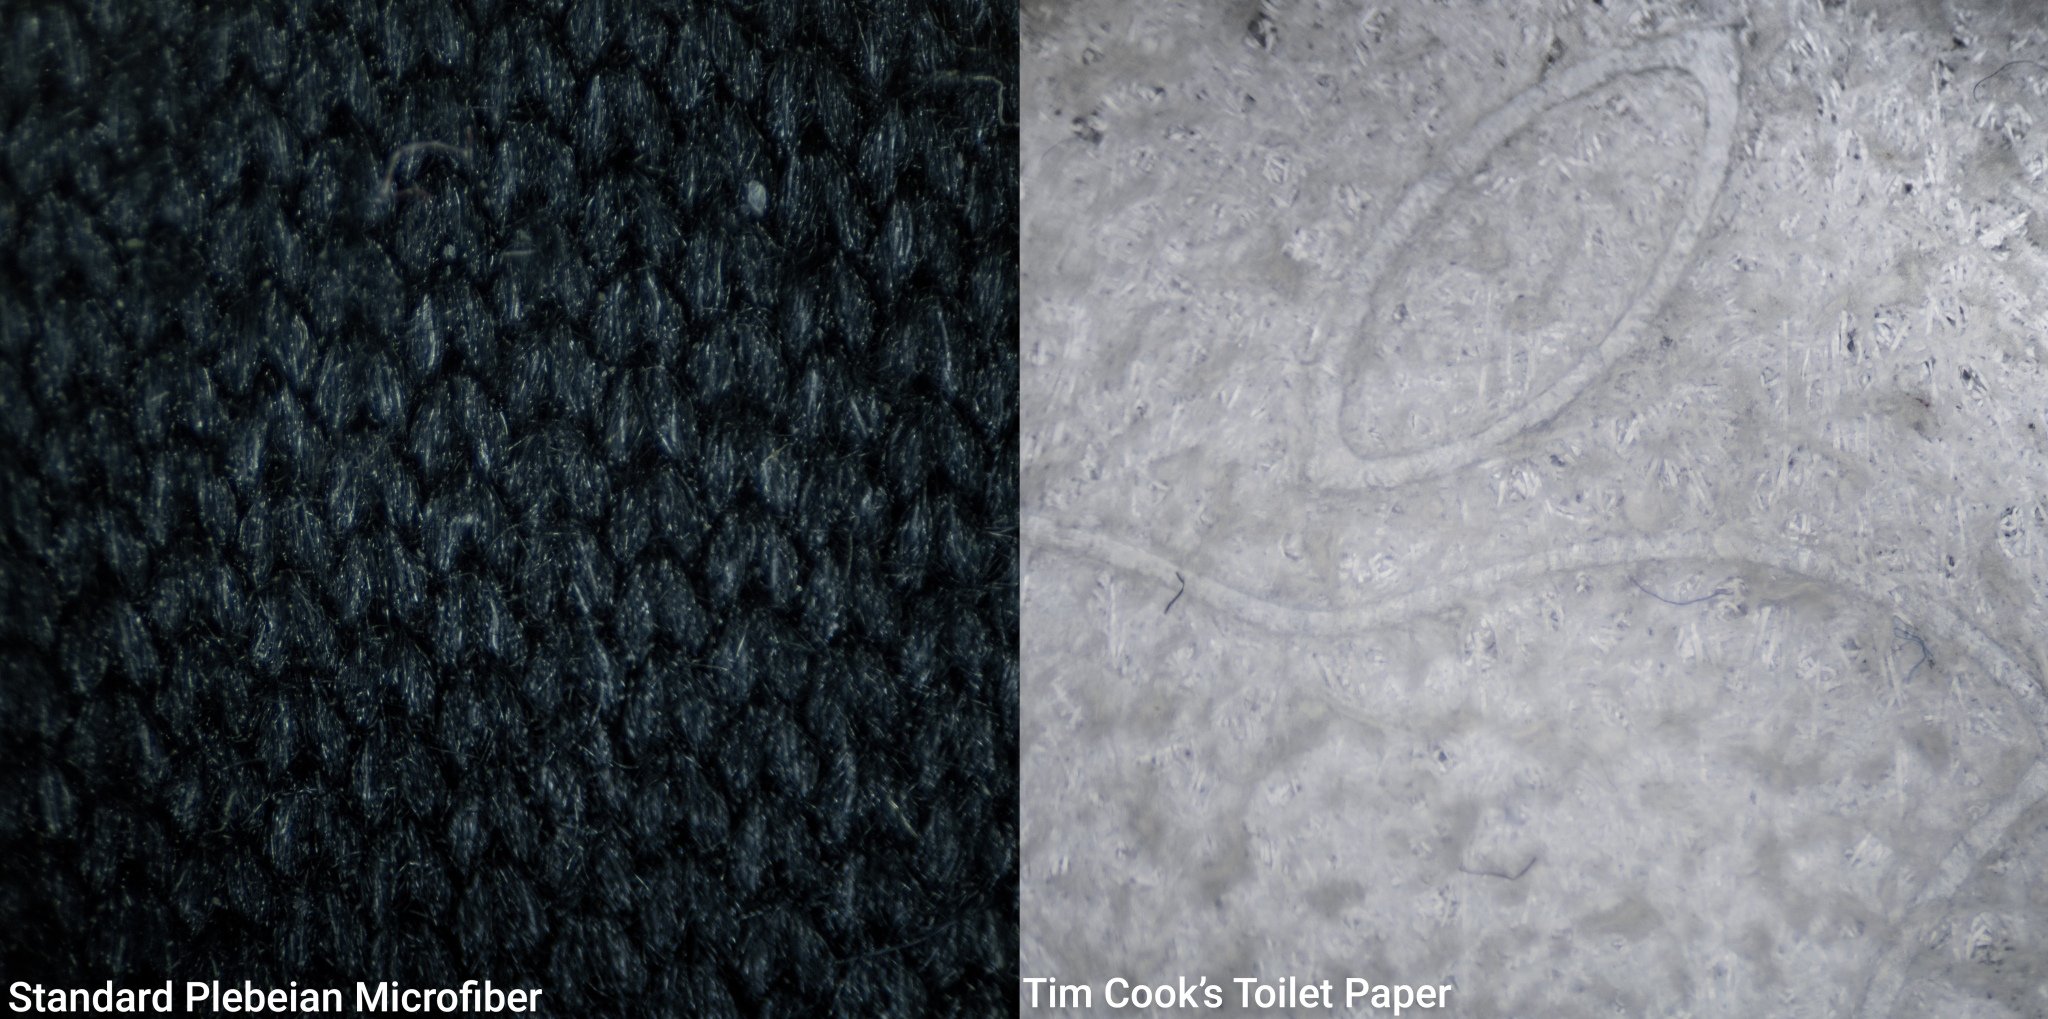 O pano comum "dos plebeus", na esquerda, ao lado do "papel higiênico do Tim Cook", como estabelece o iFixit. (Fonte: iFixit via 9to5 Mac / Reprodução)